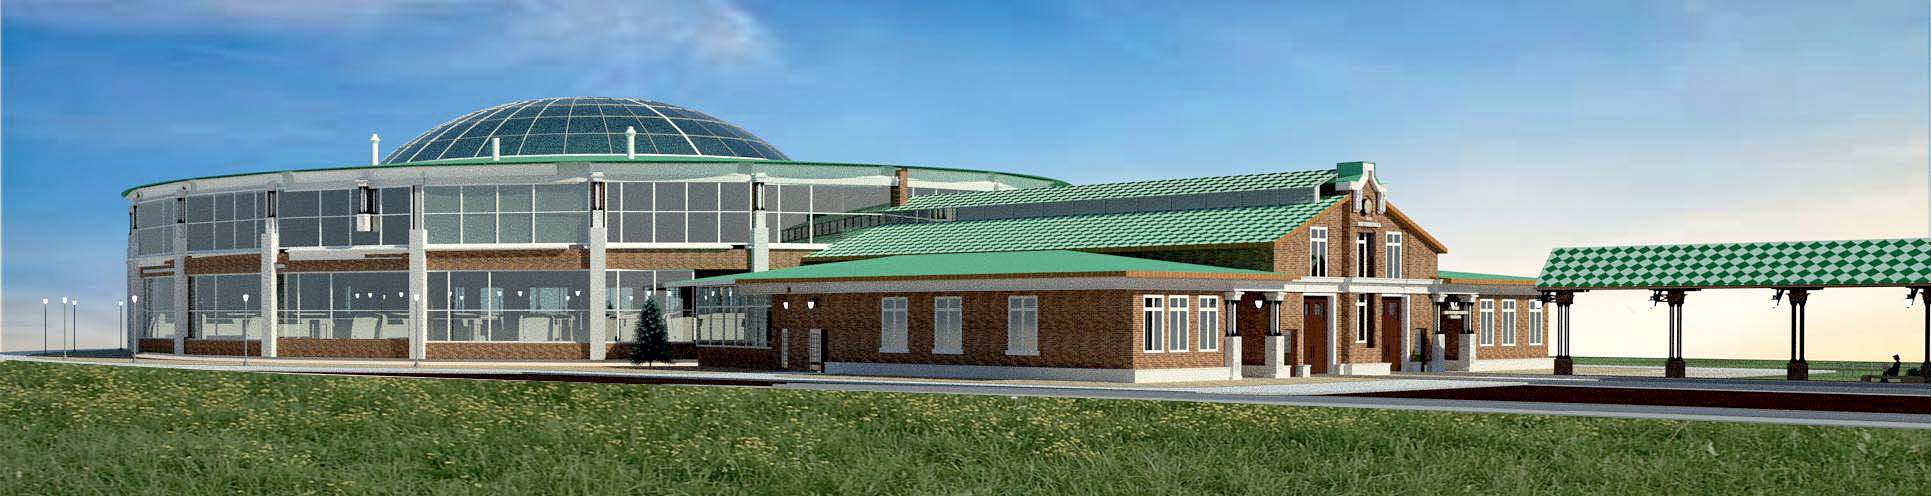 Институт «Уралжелдорпроект» представил эскизы будущих учебных зданий и станций. Пока это предварительные наброски, их еще не утвердили